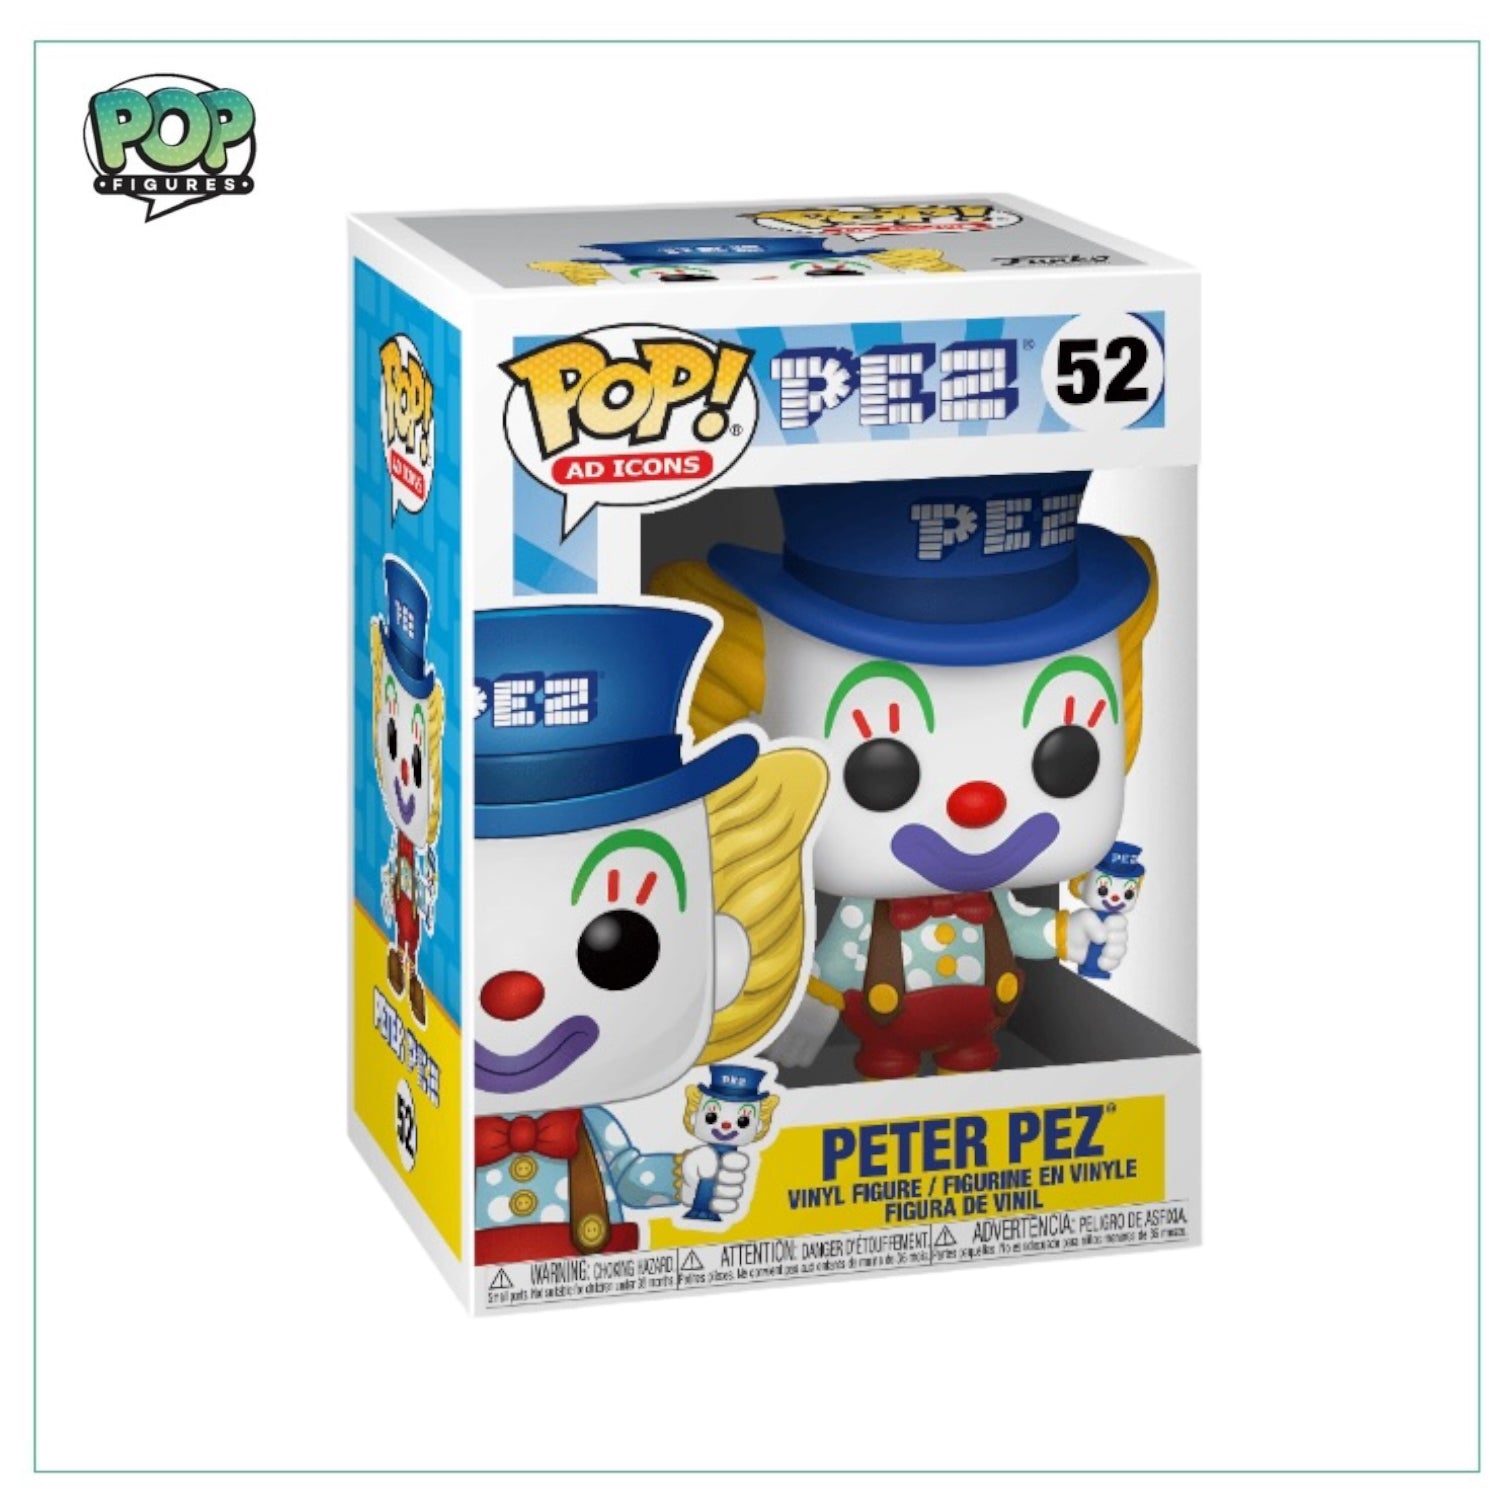 Peter Pez #52 Funko Pop! - Ad Icons